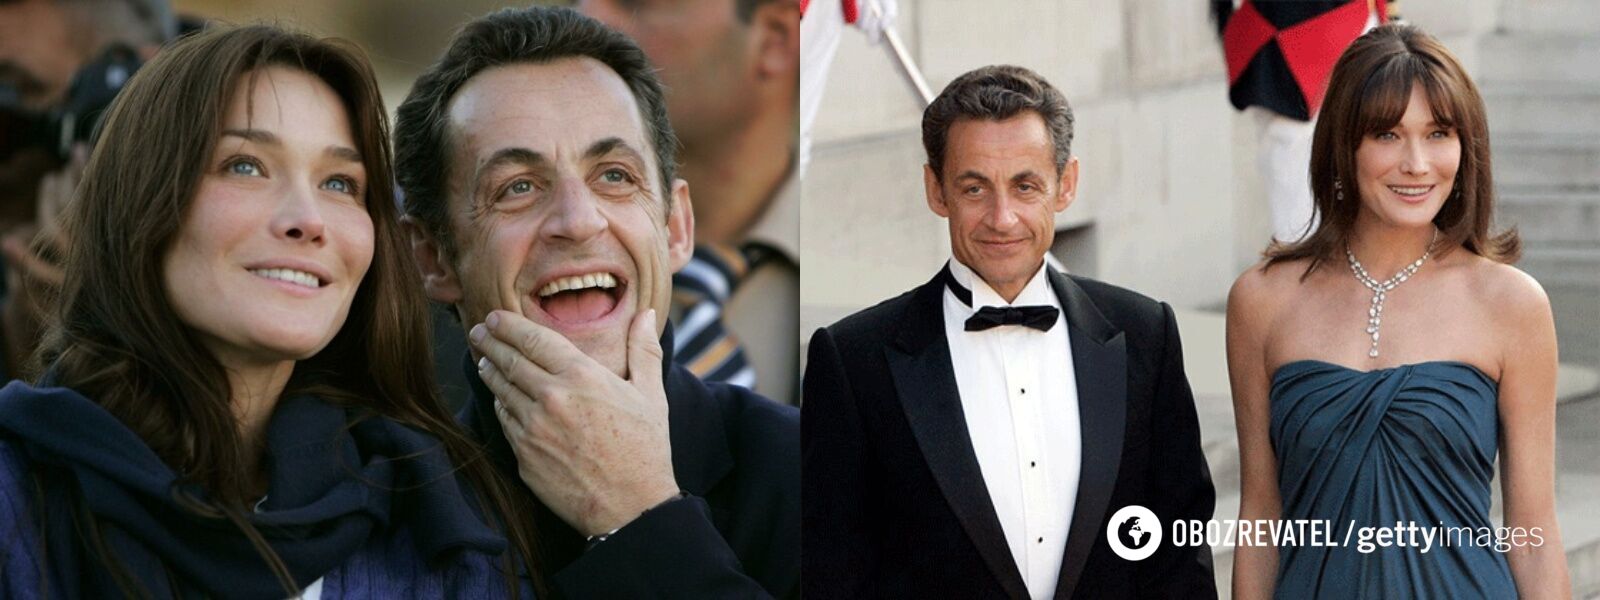 Карла Бруні та Ніколя Саркозі сподобалися одне одному з першої зустрічі.